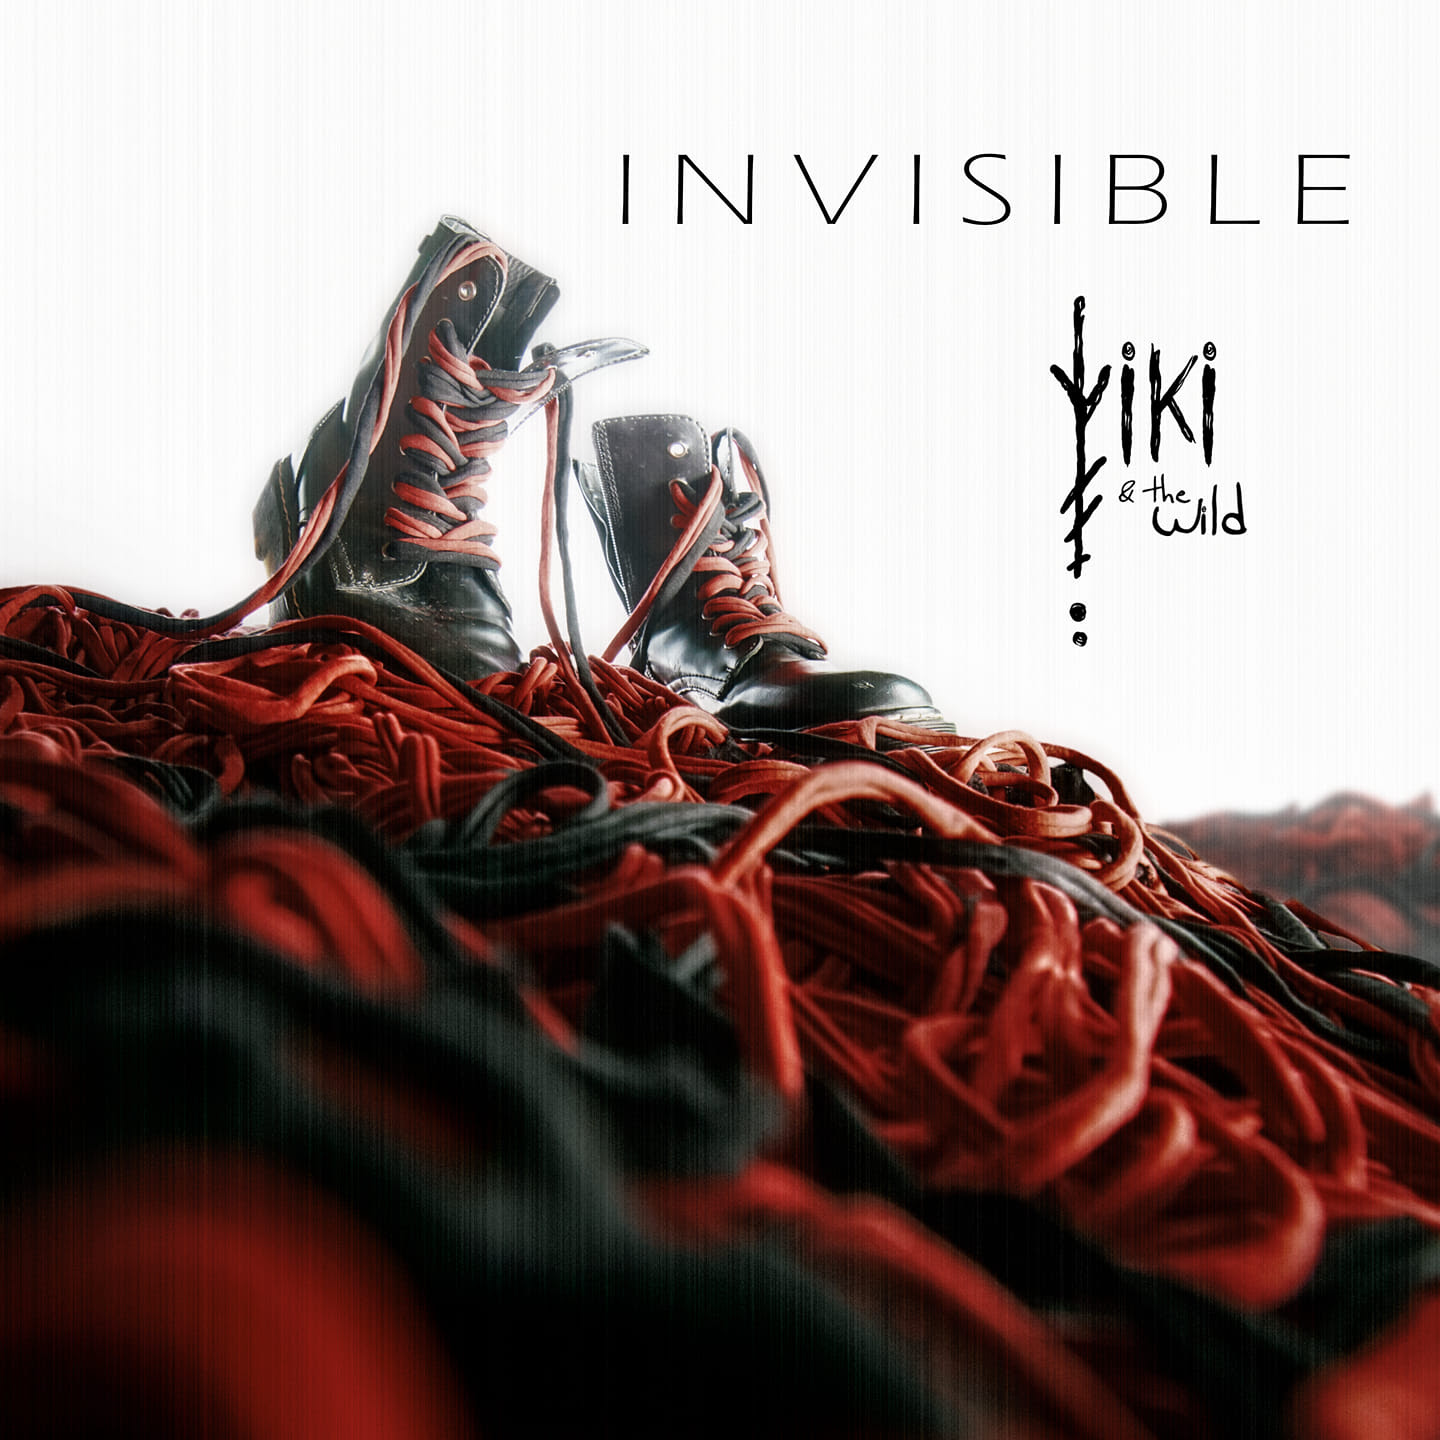 Viki Lafuente y su banda The Wild lanzan “Invisible”. Estreno vídeo 19 de marzo.